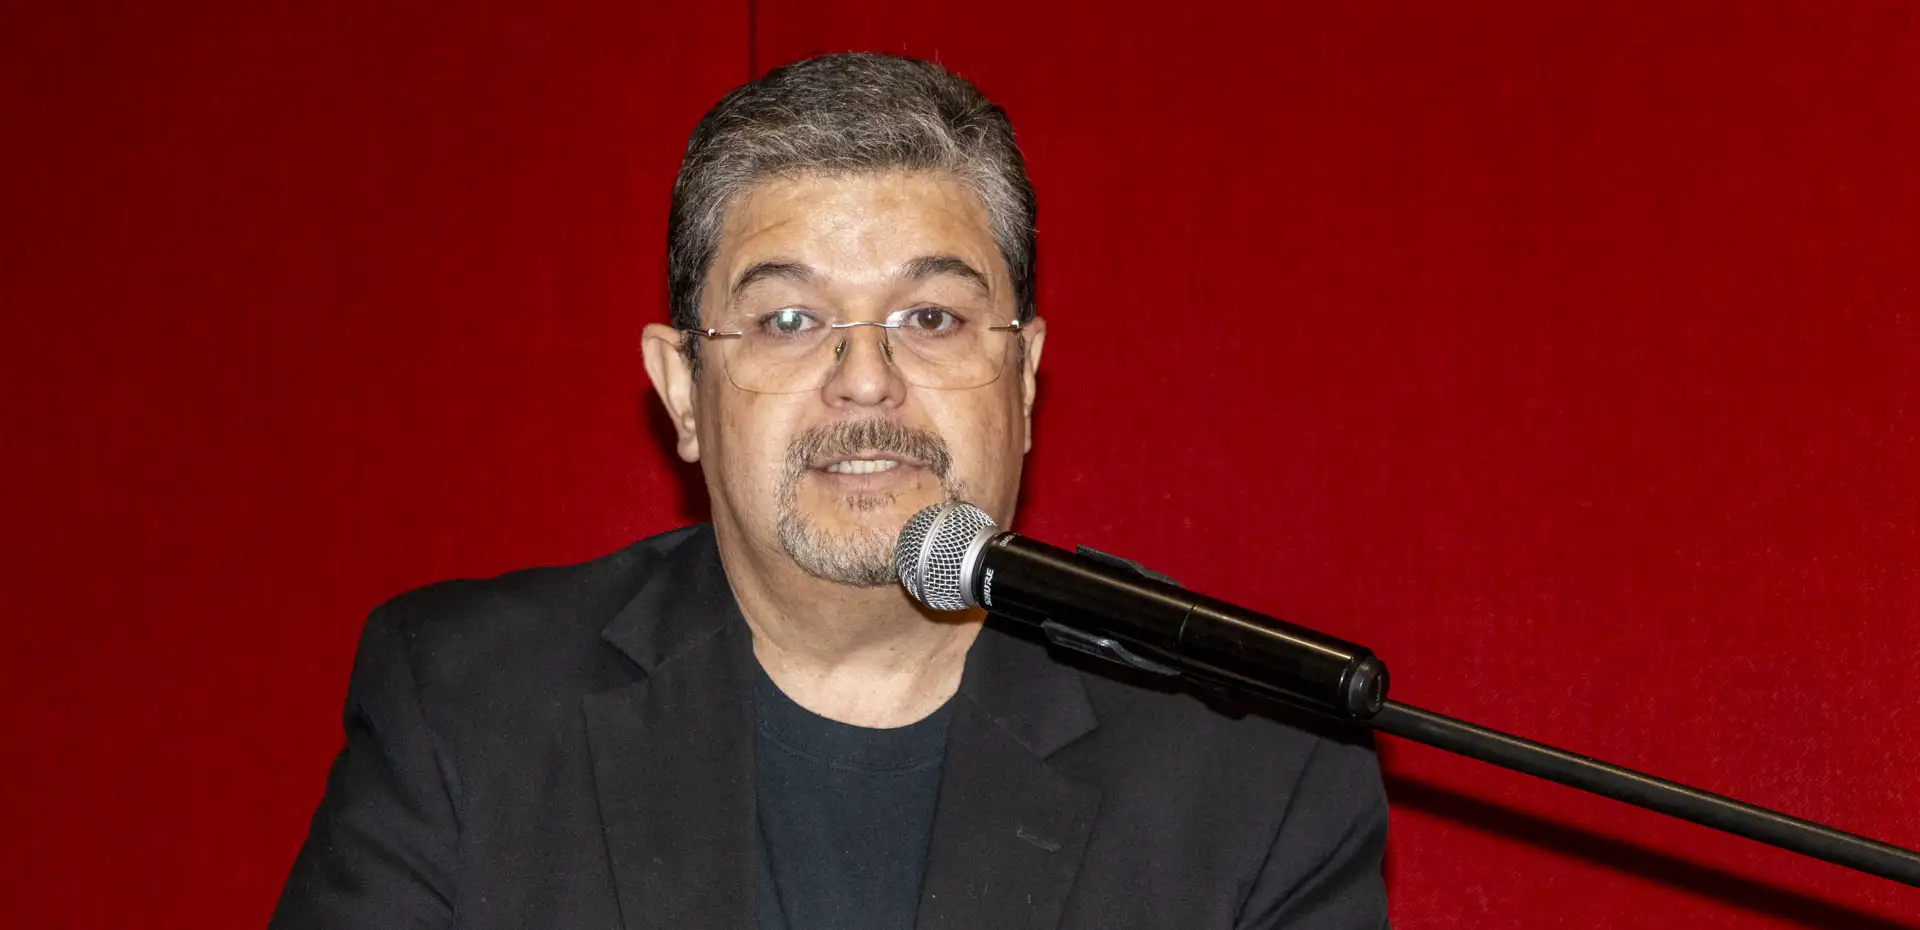 Dr. Ernesto Salgado Sánchez